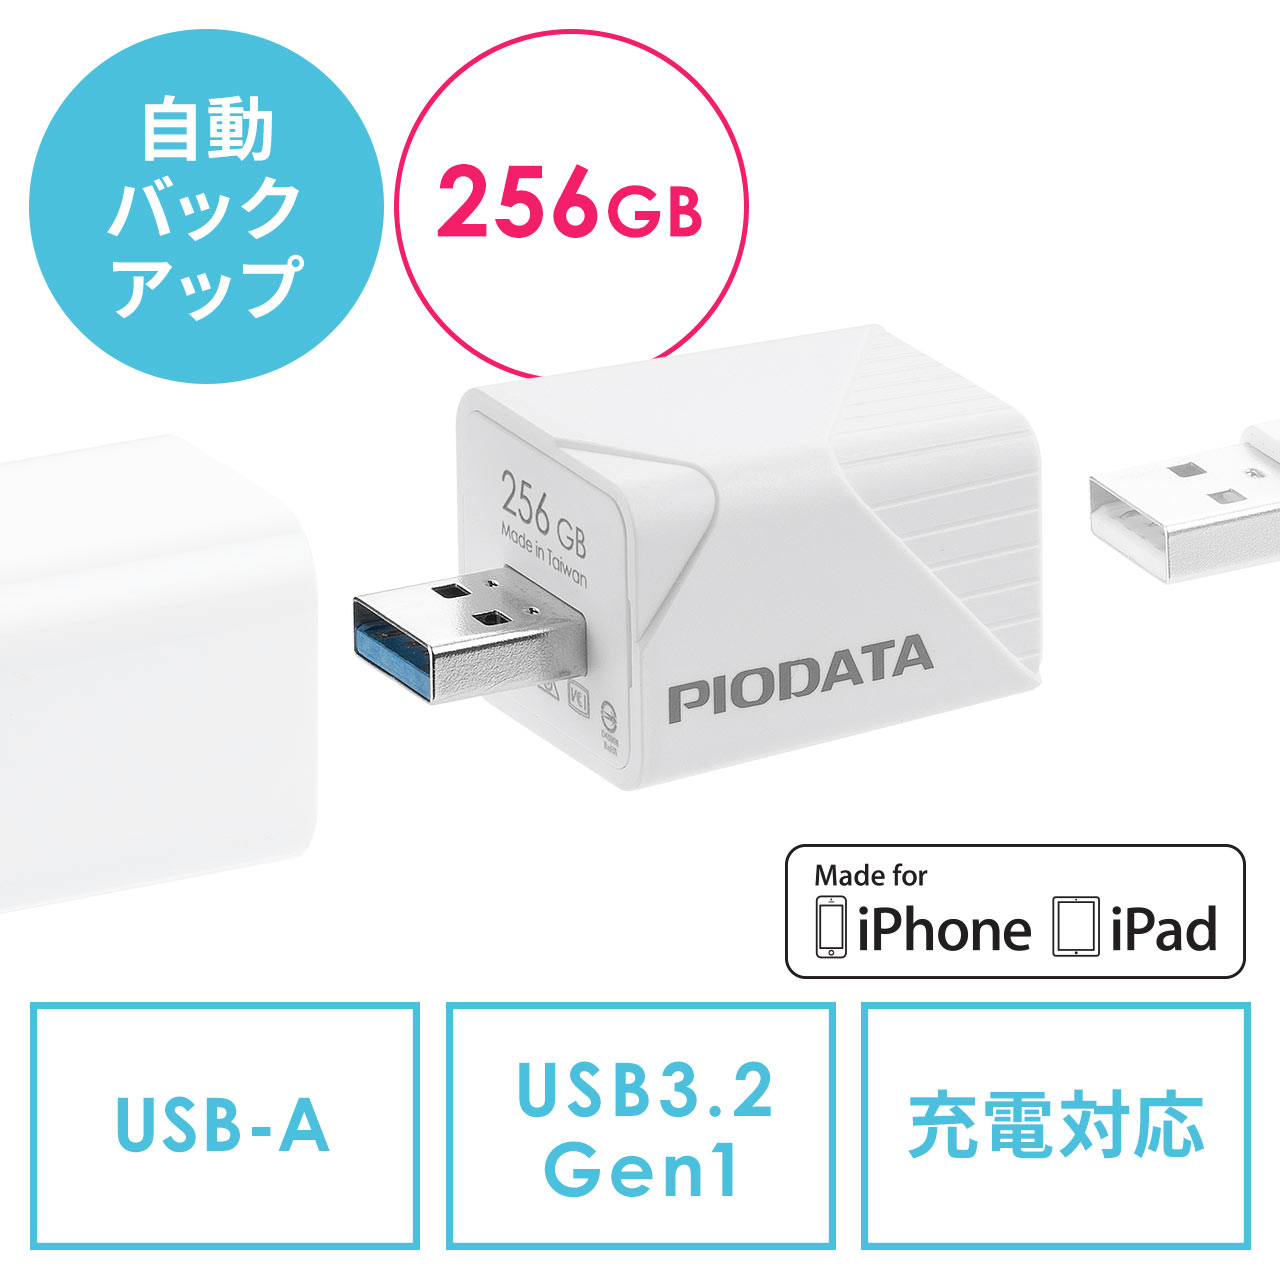 【メモリセール】iPhone iPad バックアップ USBメモリ 256GB MFi認証  USB3.2 Gen1(USB3.1/3.0) 600-IPLA256GB3